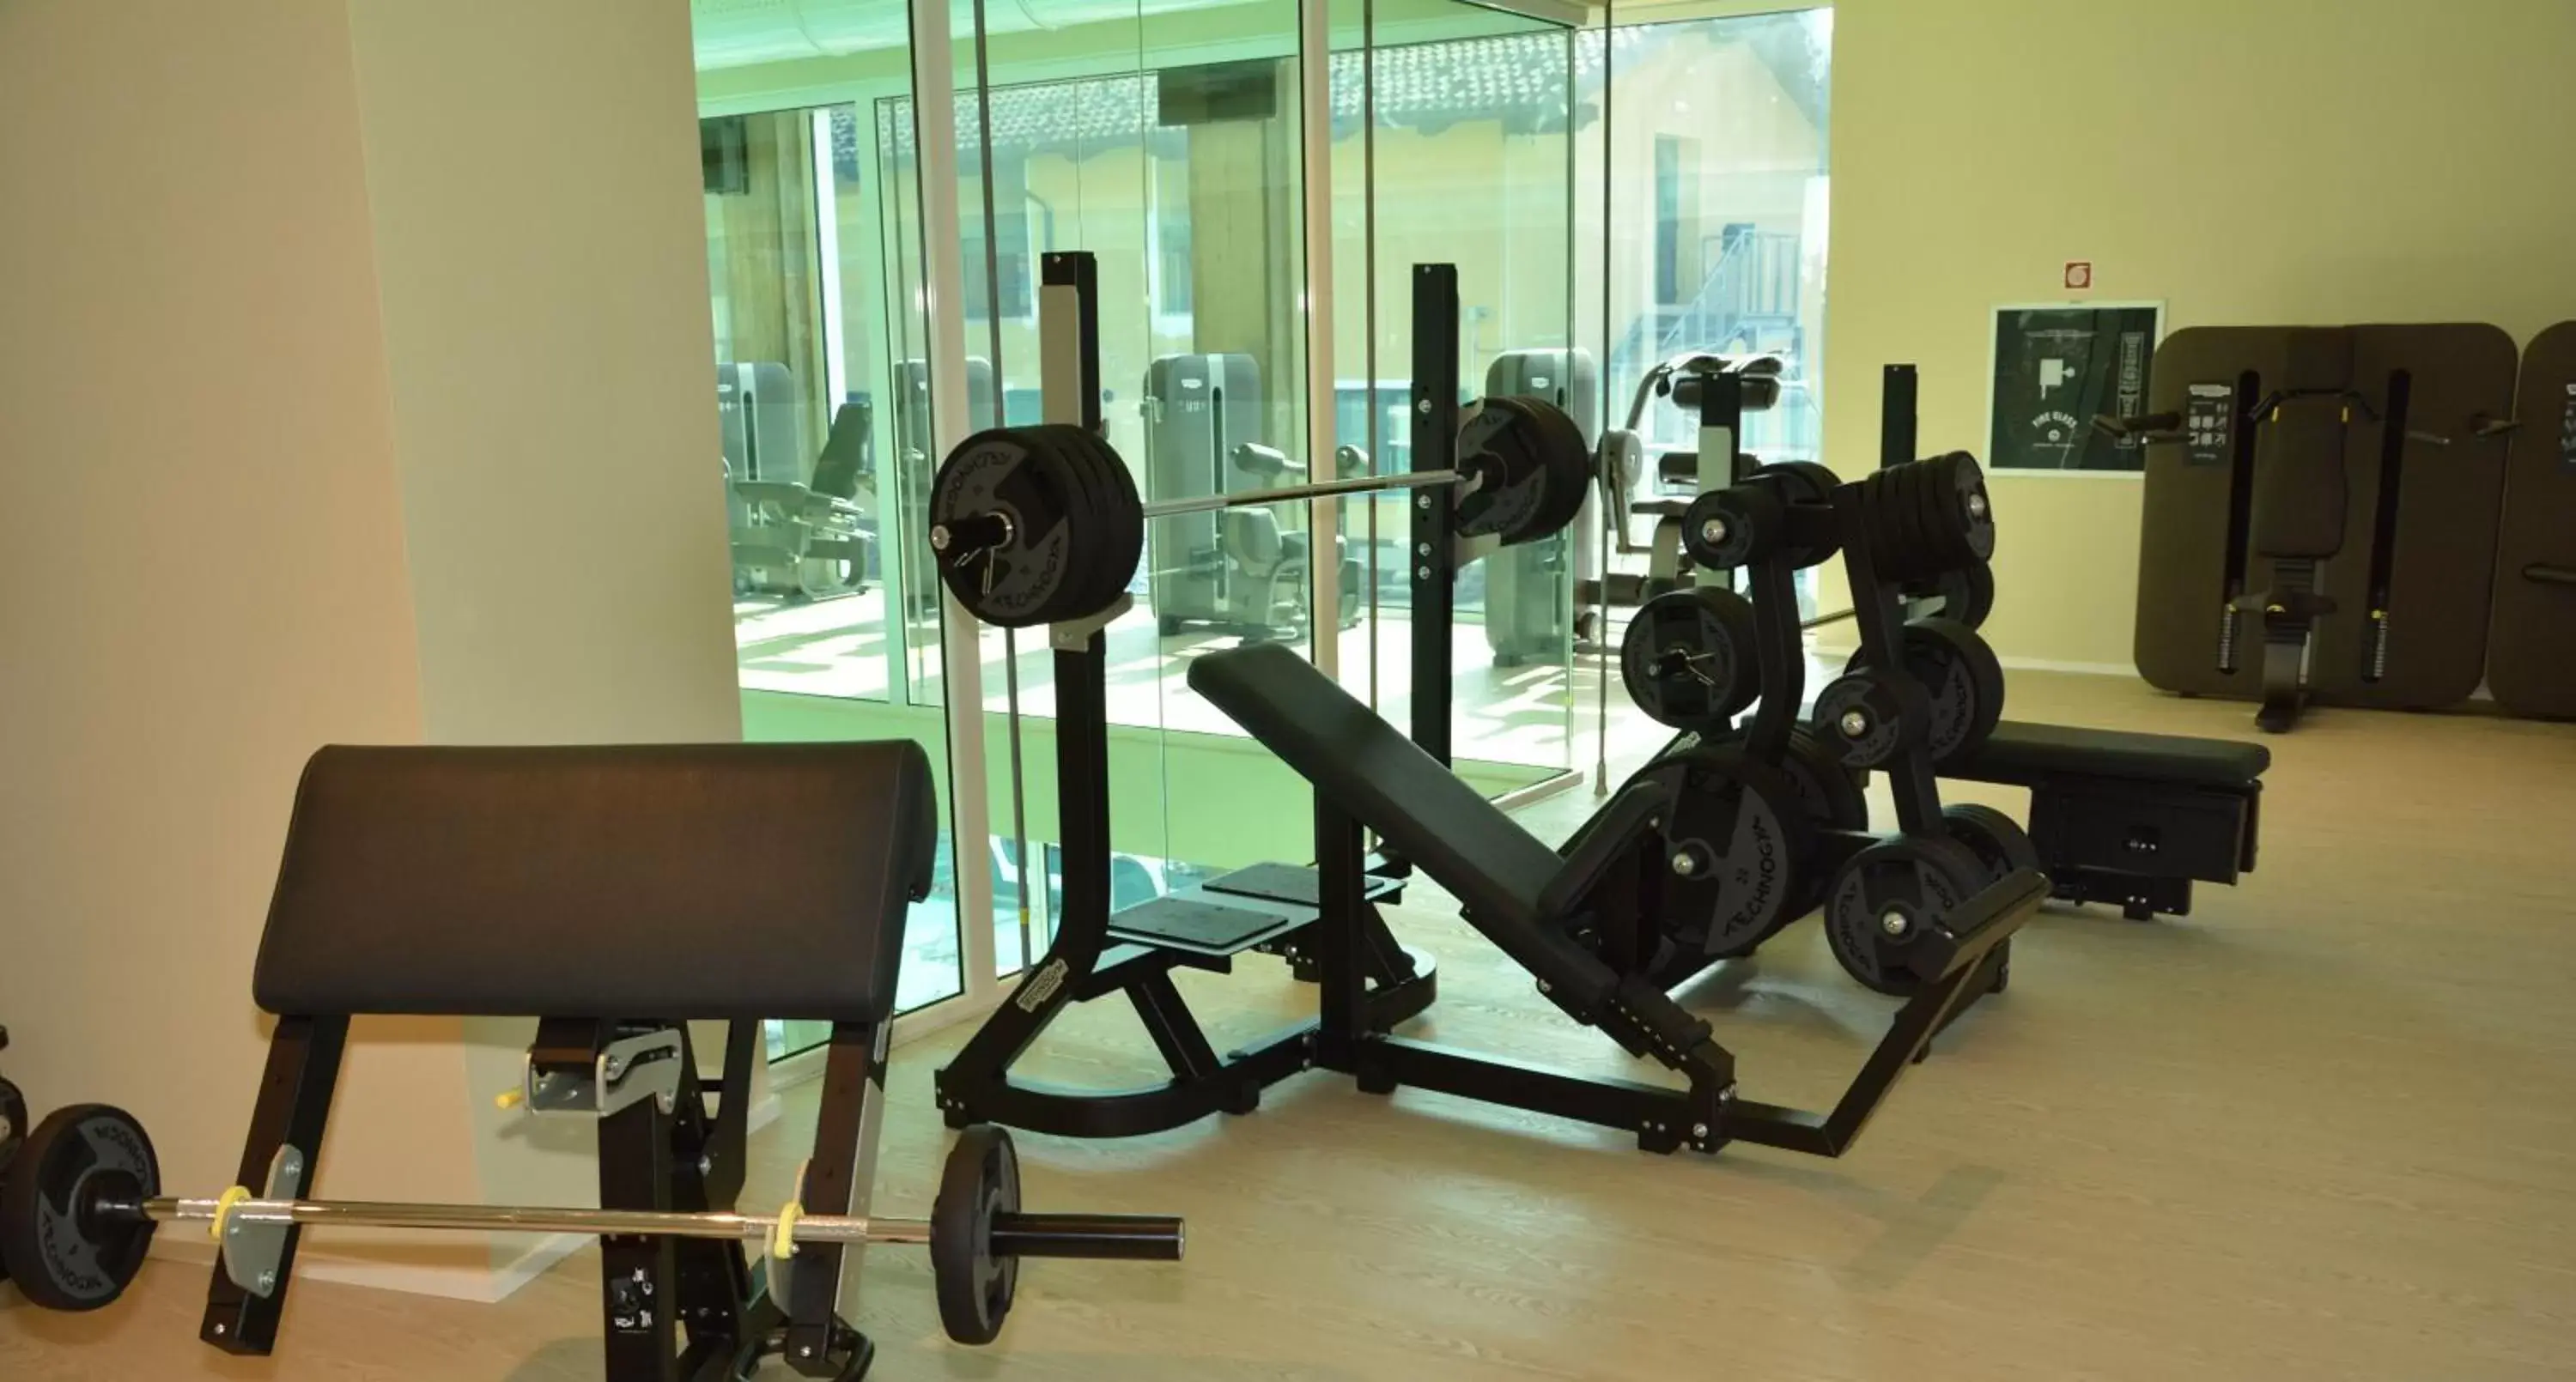 Fitness centre/facilities, Fitness Center/Facilities in Hotel Villa Glicini